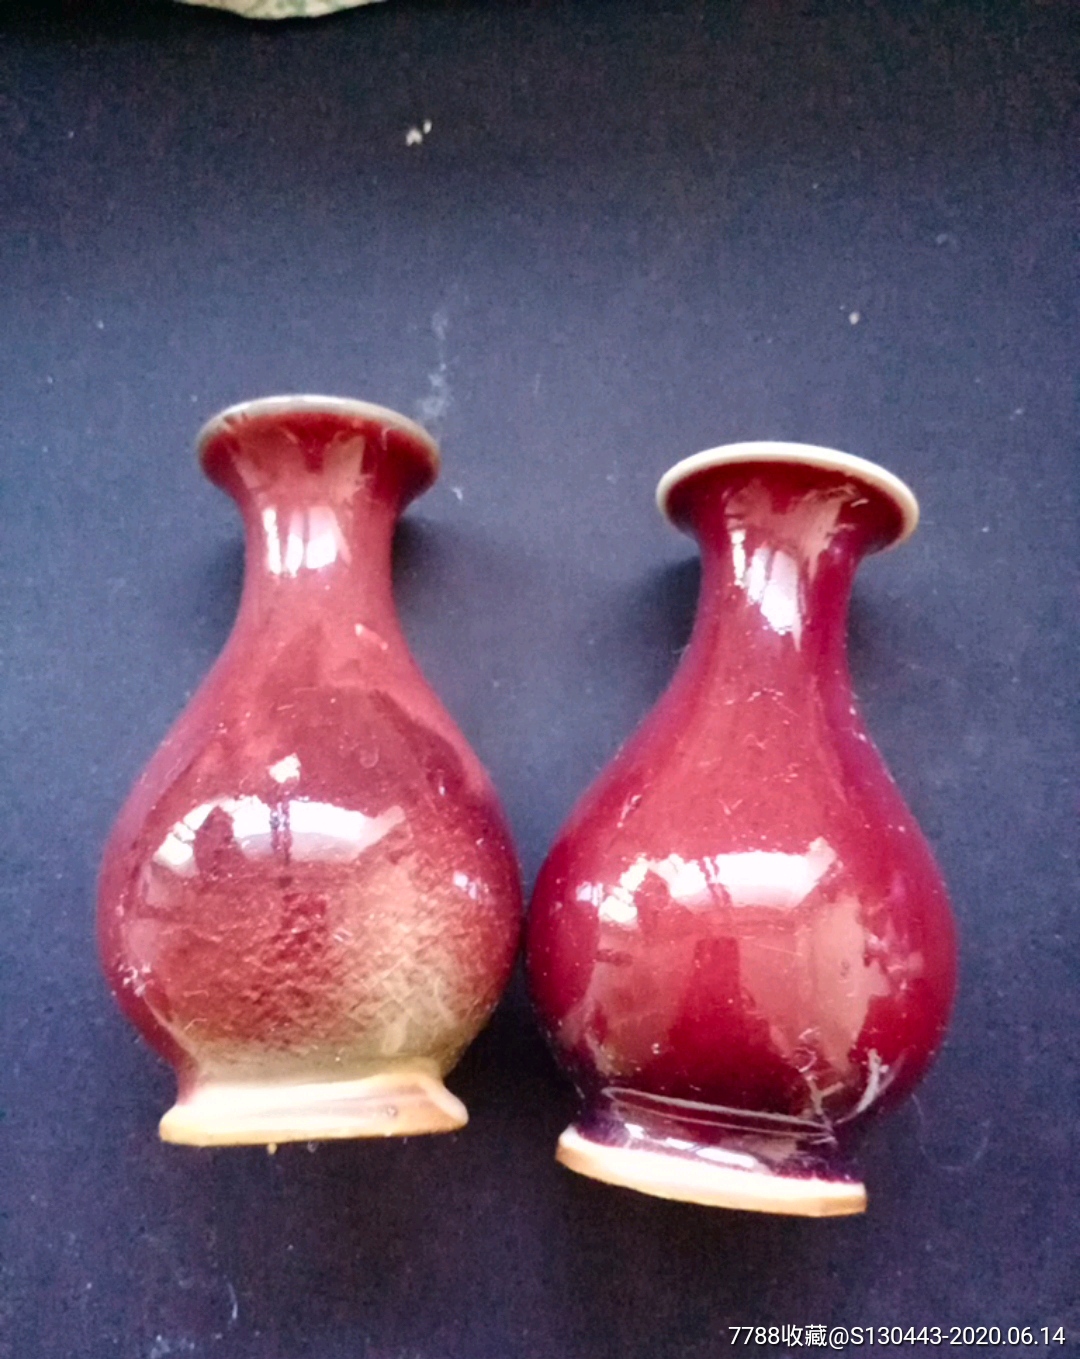 八十年代的钧瓷花瓶,有一个有轻微磕碰